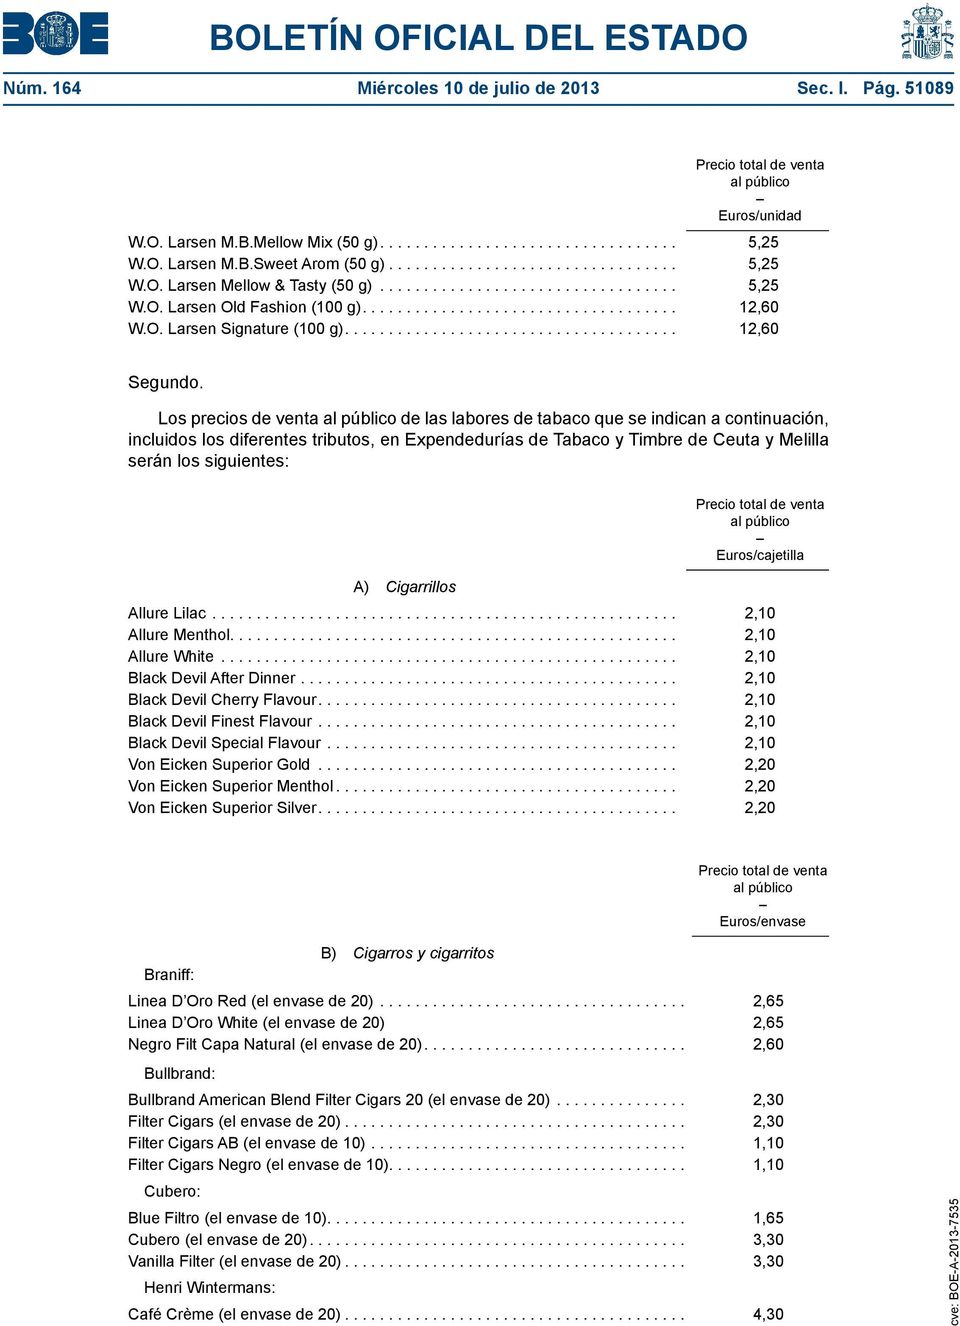 Los precios de venta de las labores de tabaco que se indican a continuación, incluidos los diferentes tributos, en Expendedurías de Tabaco y Timbre de Ceuta y Melilla serán los siguientes: A)